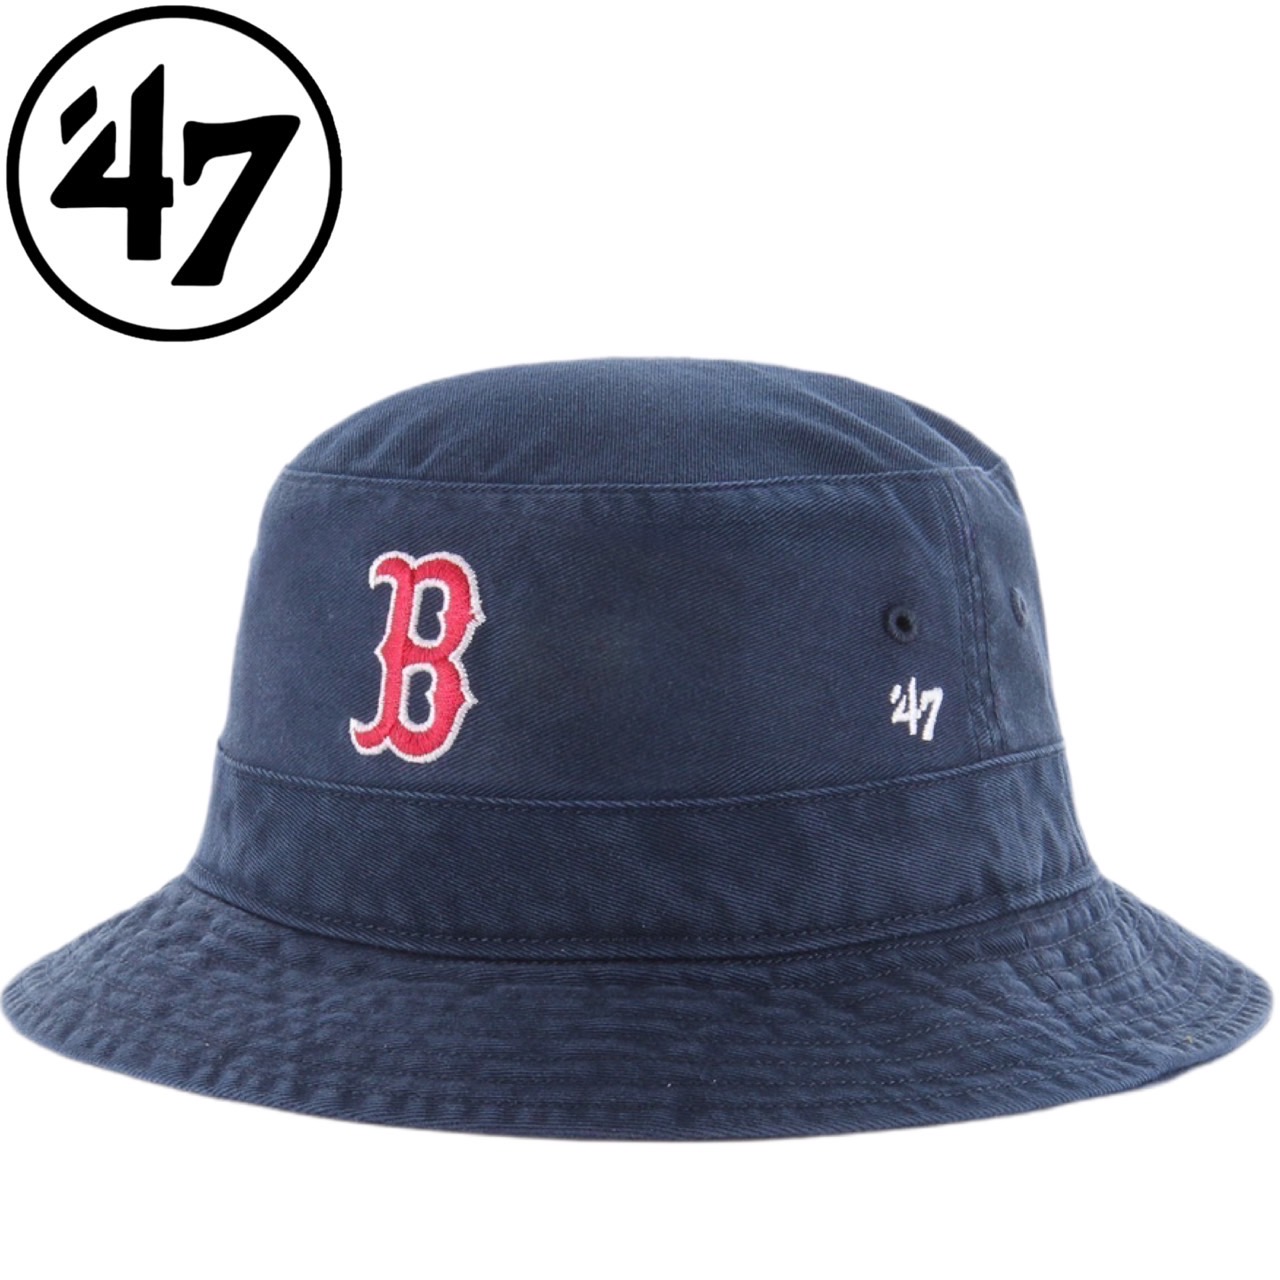 47 フォーティーセブン ブランド 帽子 バケット ハット 紫外線対策 